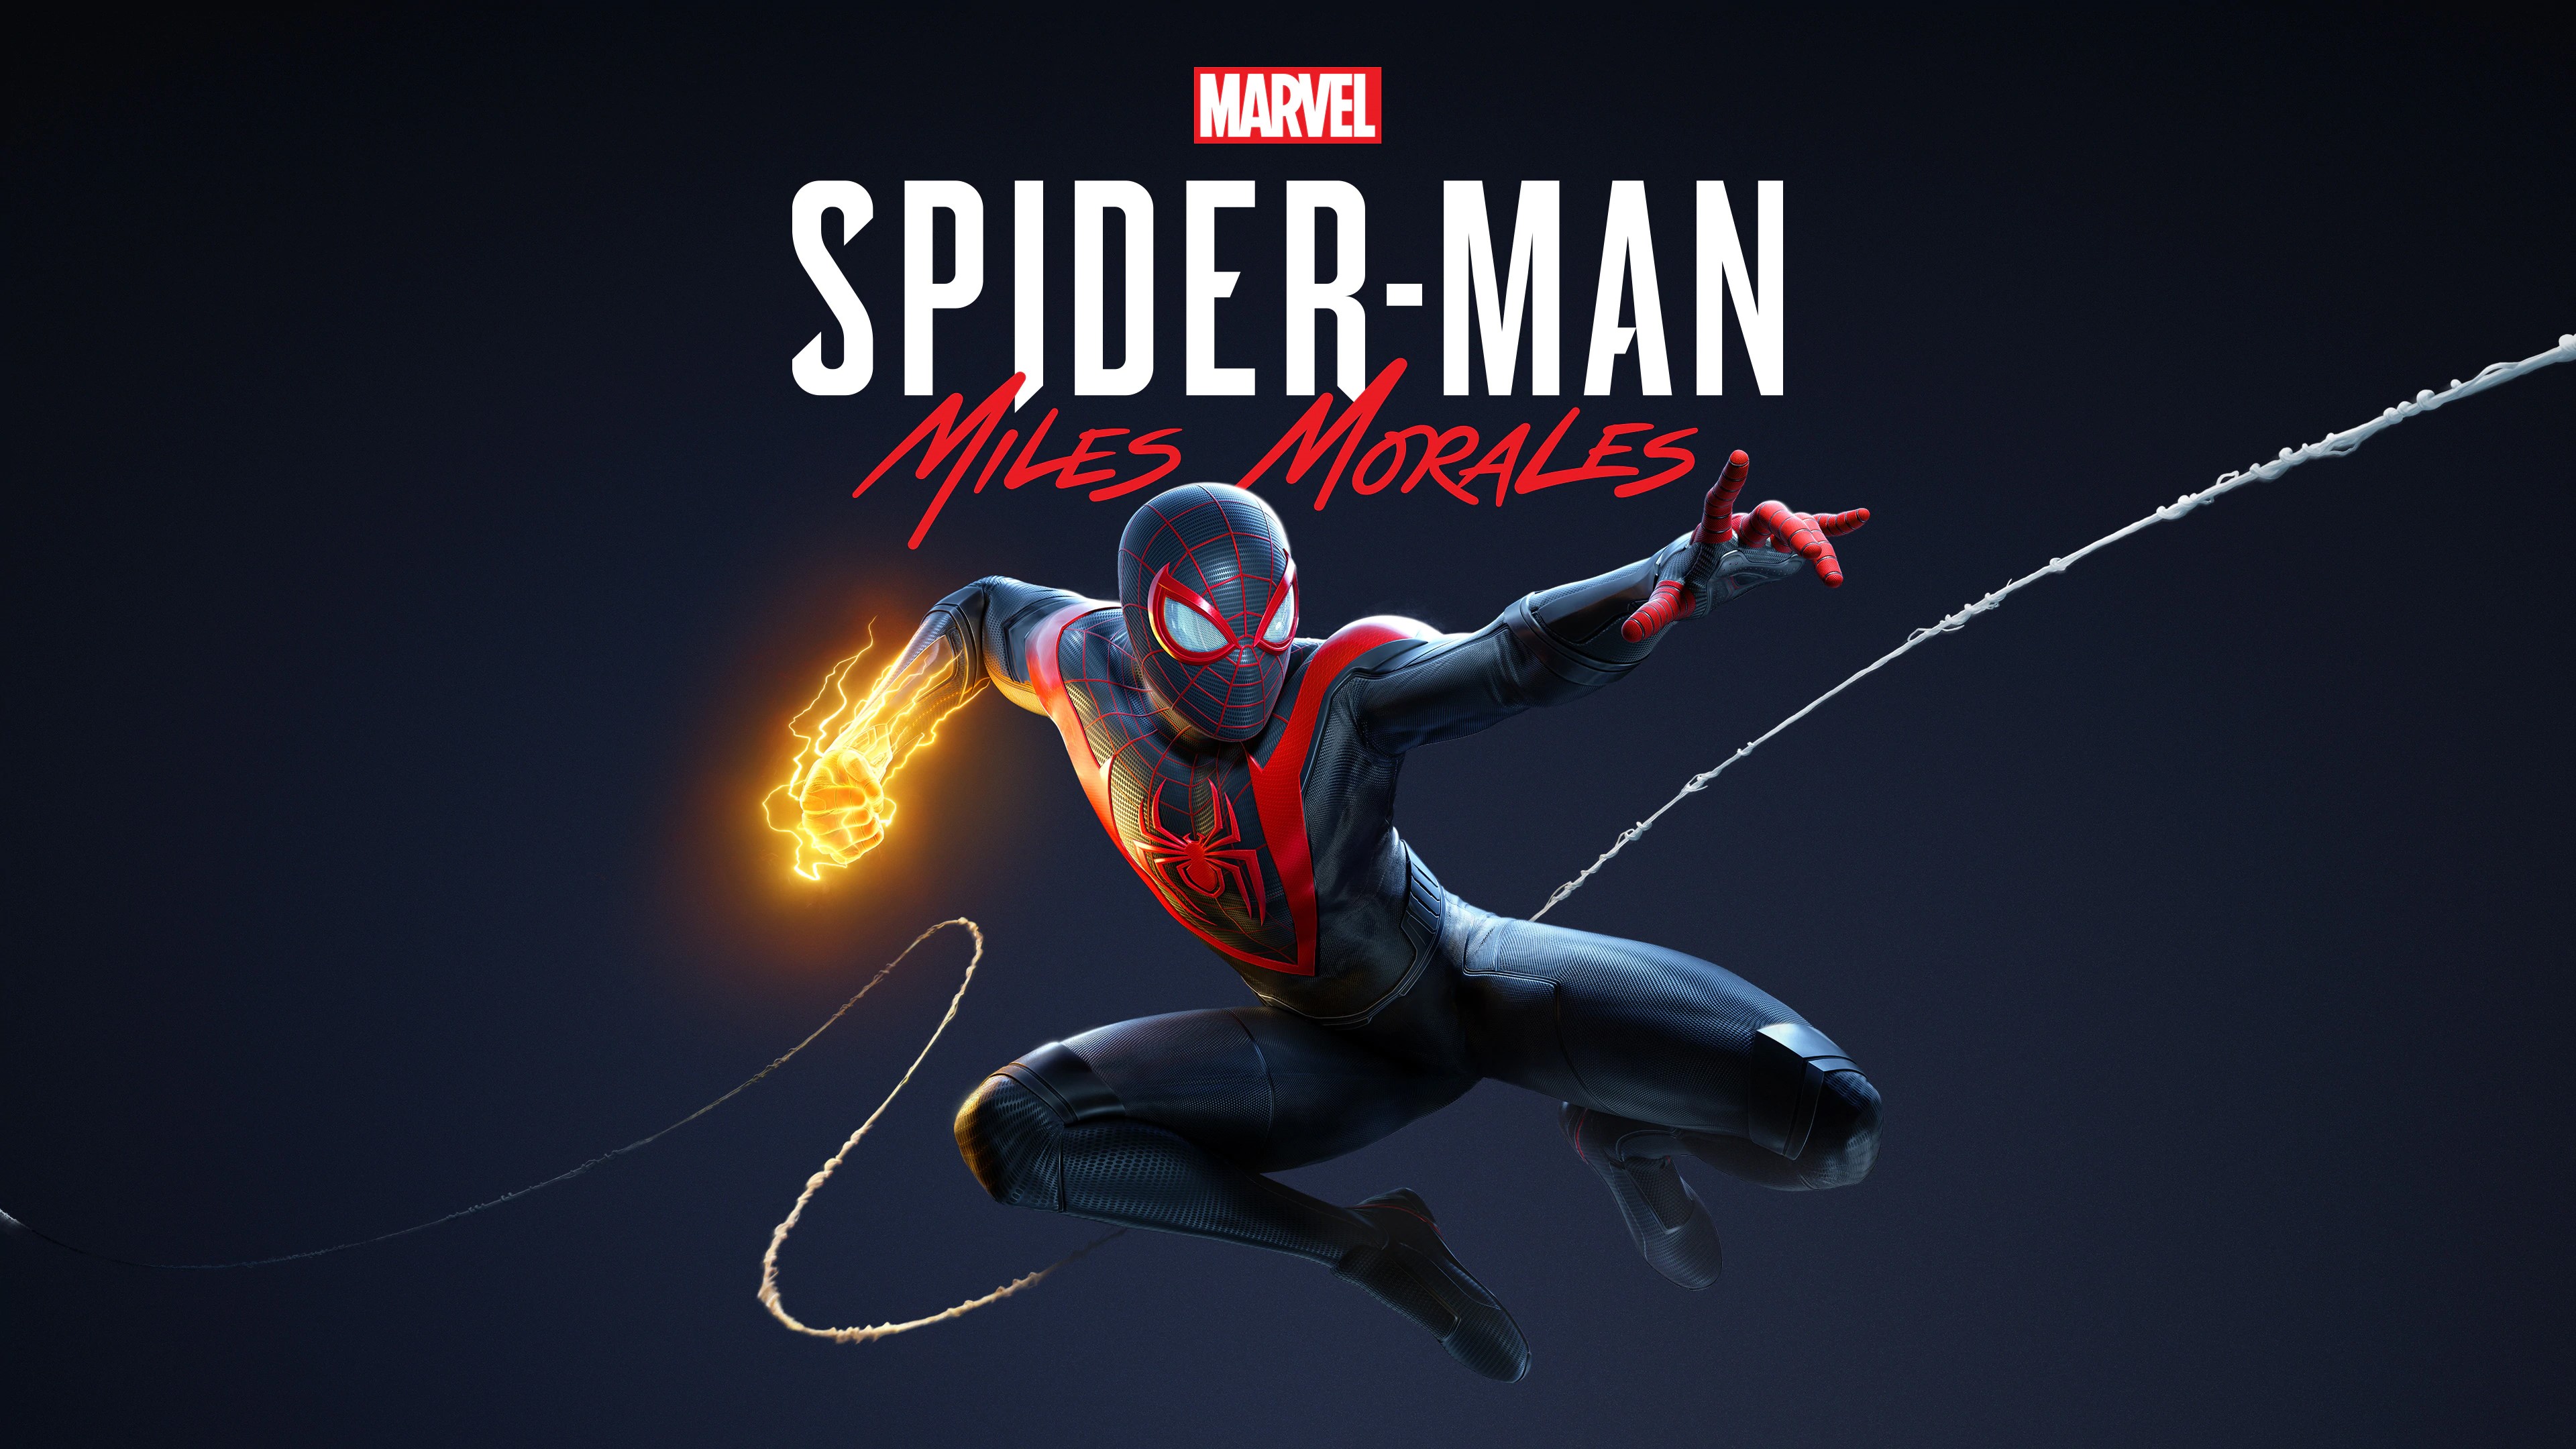 Marvel's Человек-паук /// Spider-Man: Miles Morales ( прохождение 24 ) ПОСЛЕ ФИНАЛЬНОЙ СЦЕНЫ.